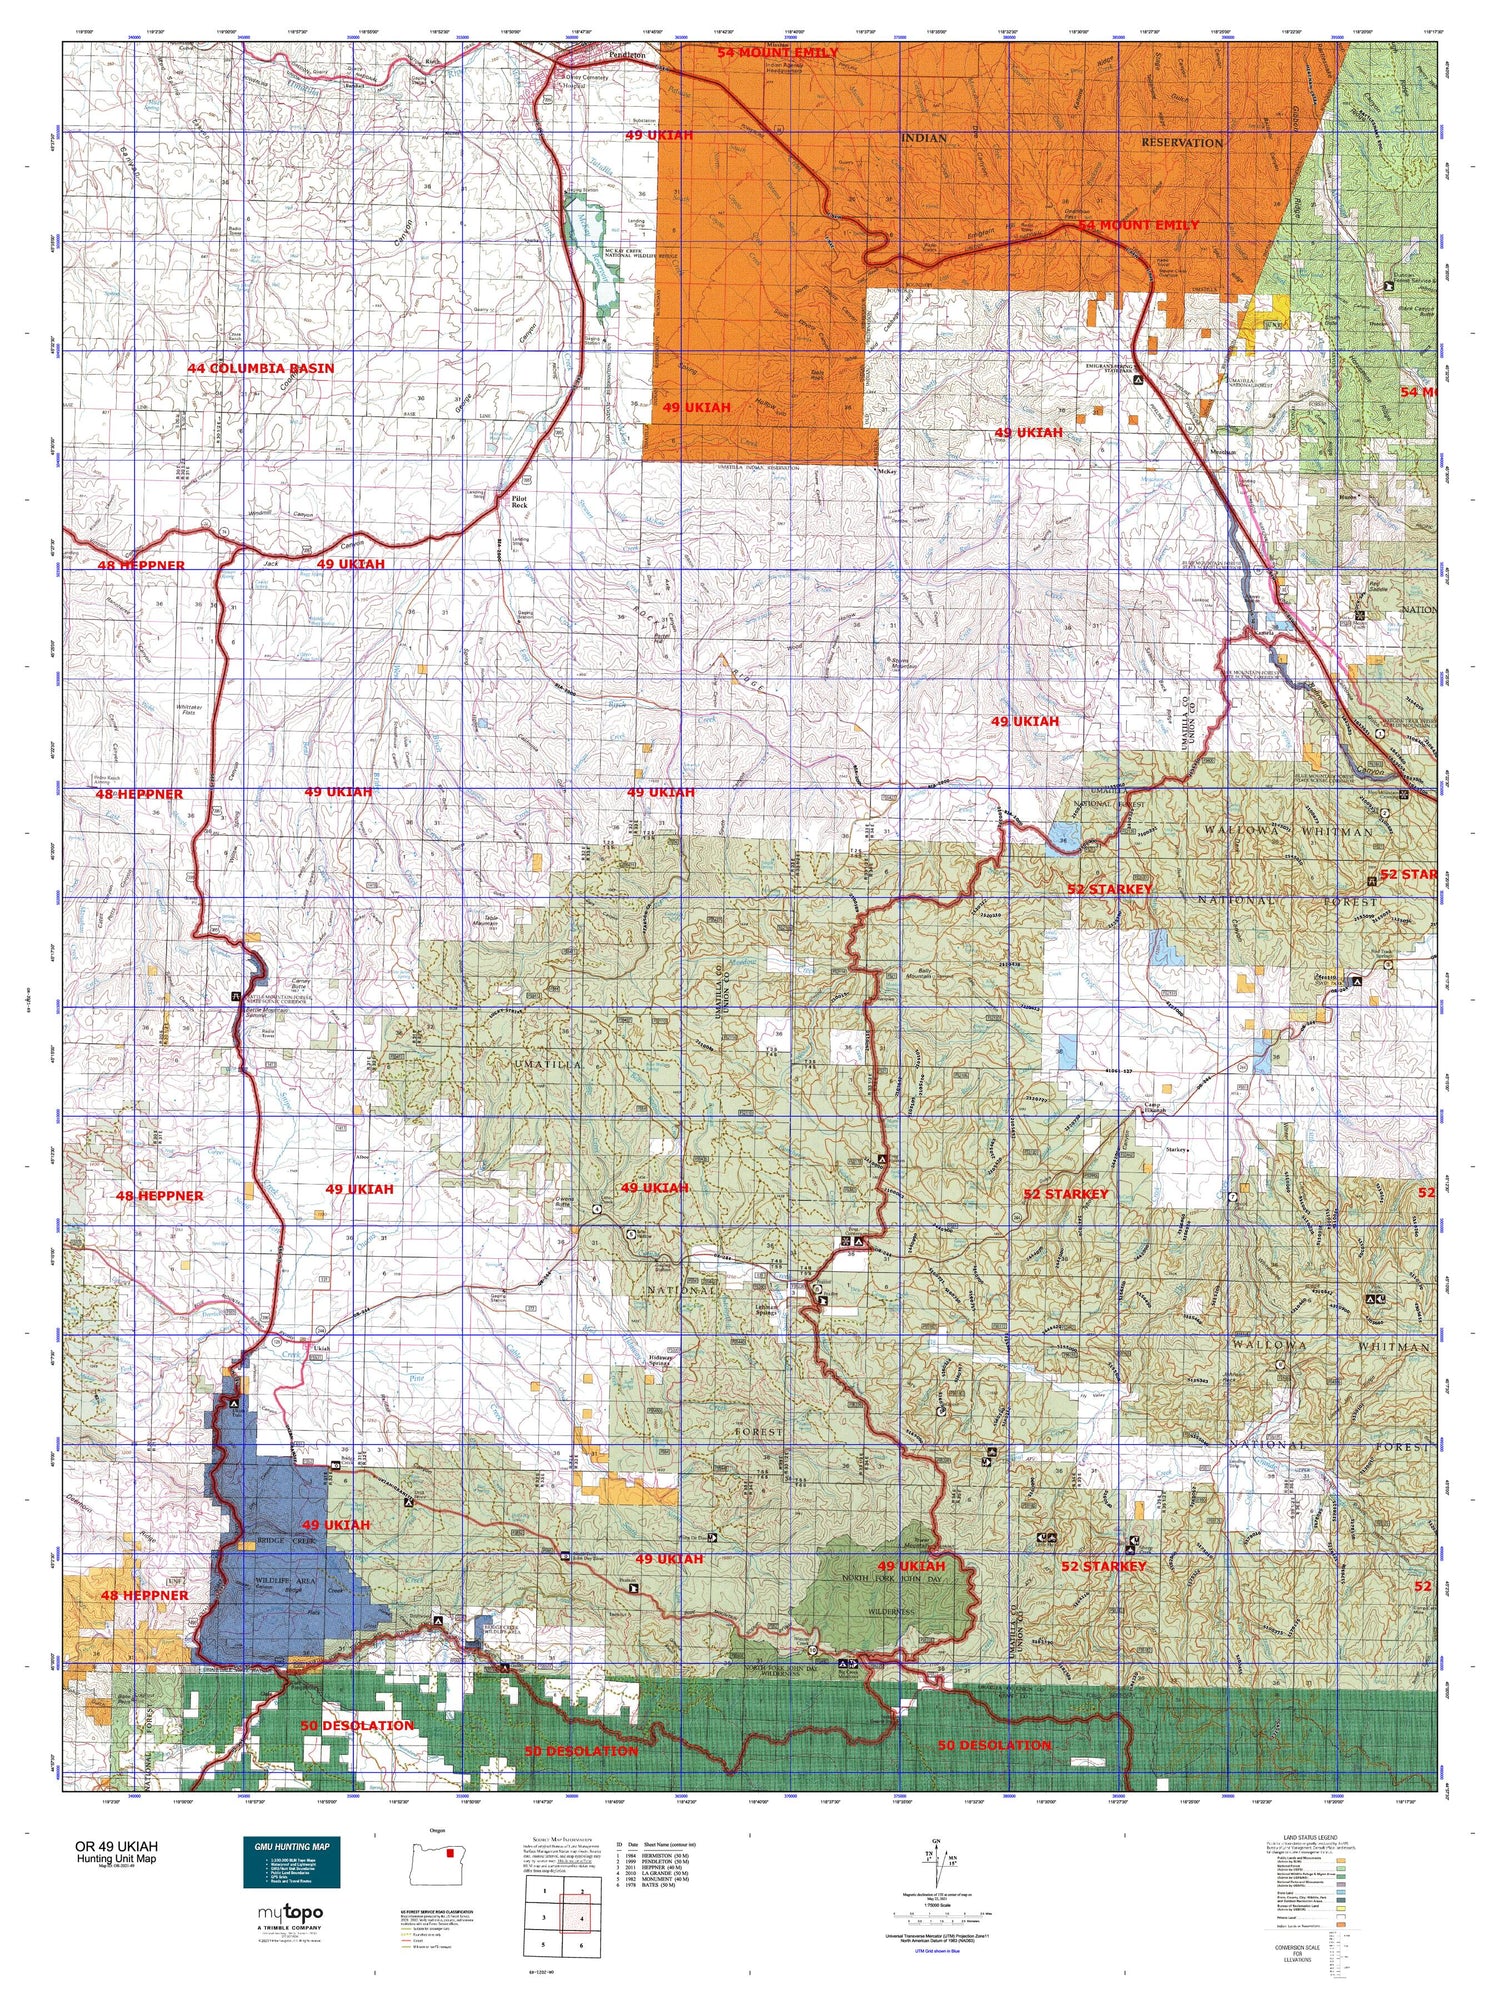 Oregon 49 Ukiah Map Image